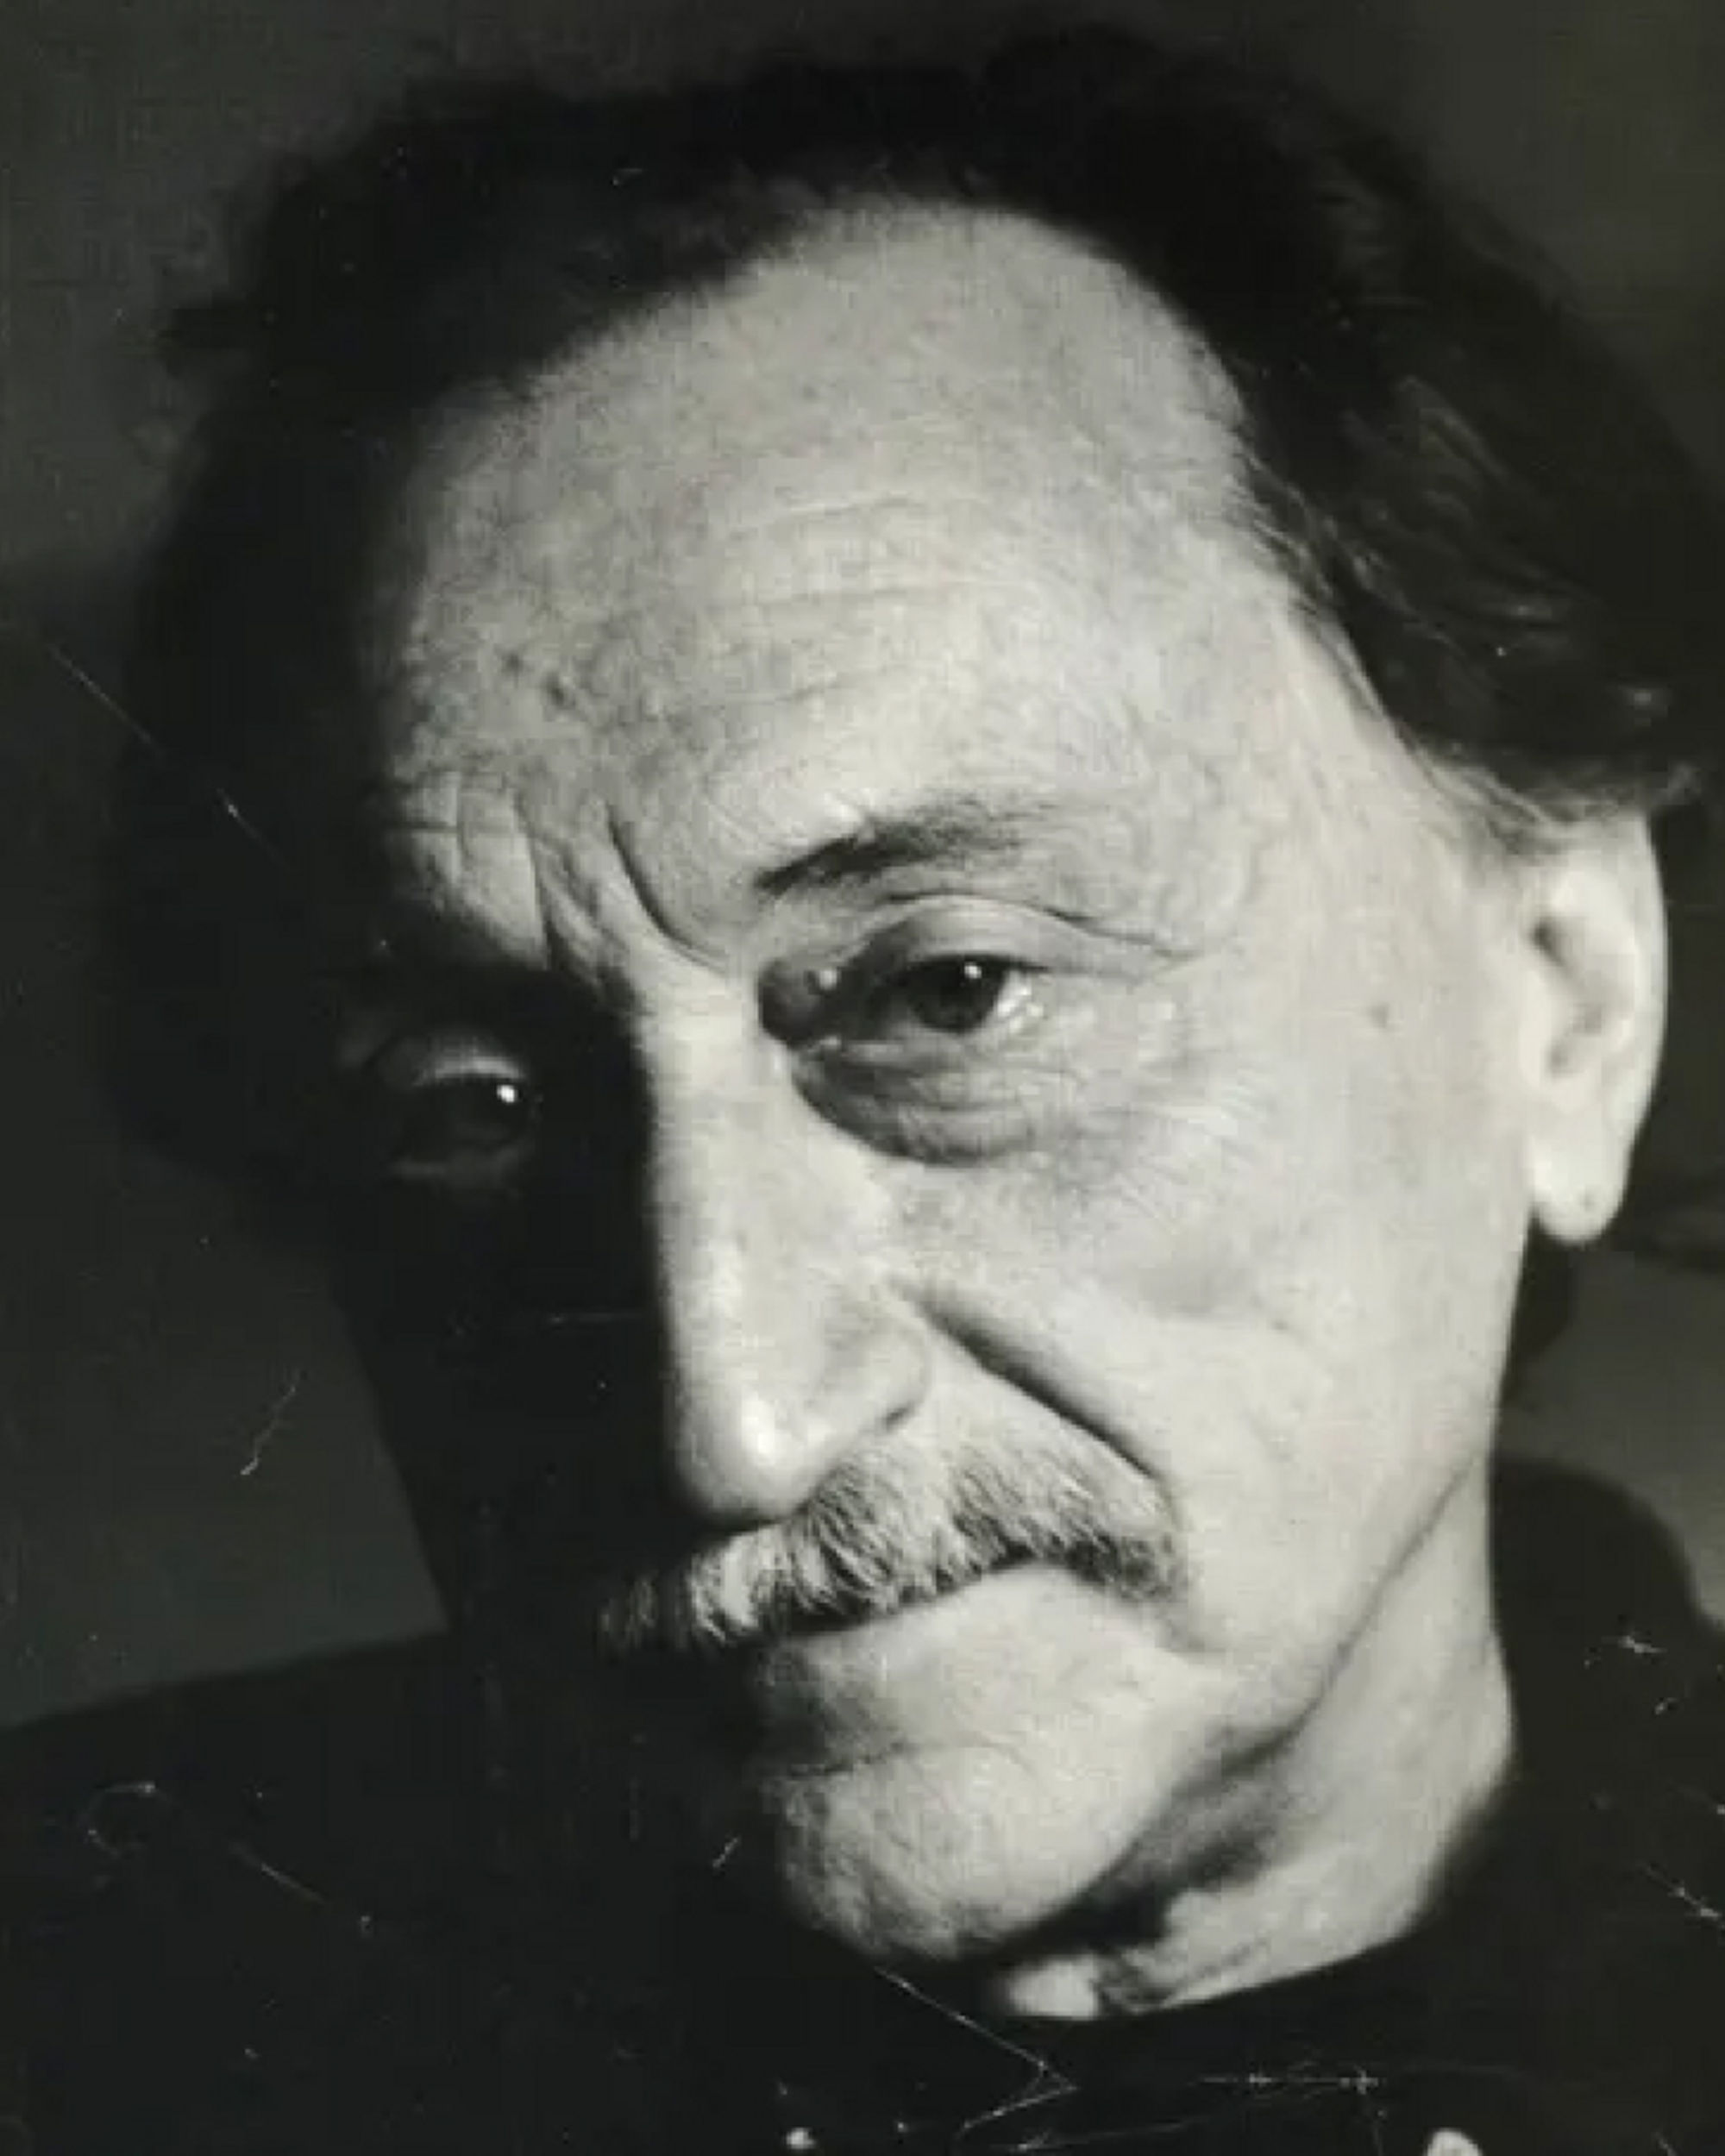 Boris Mikhailov's portrait